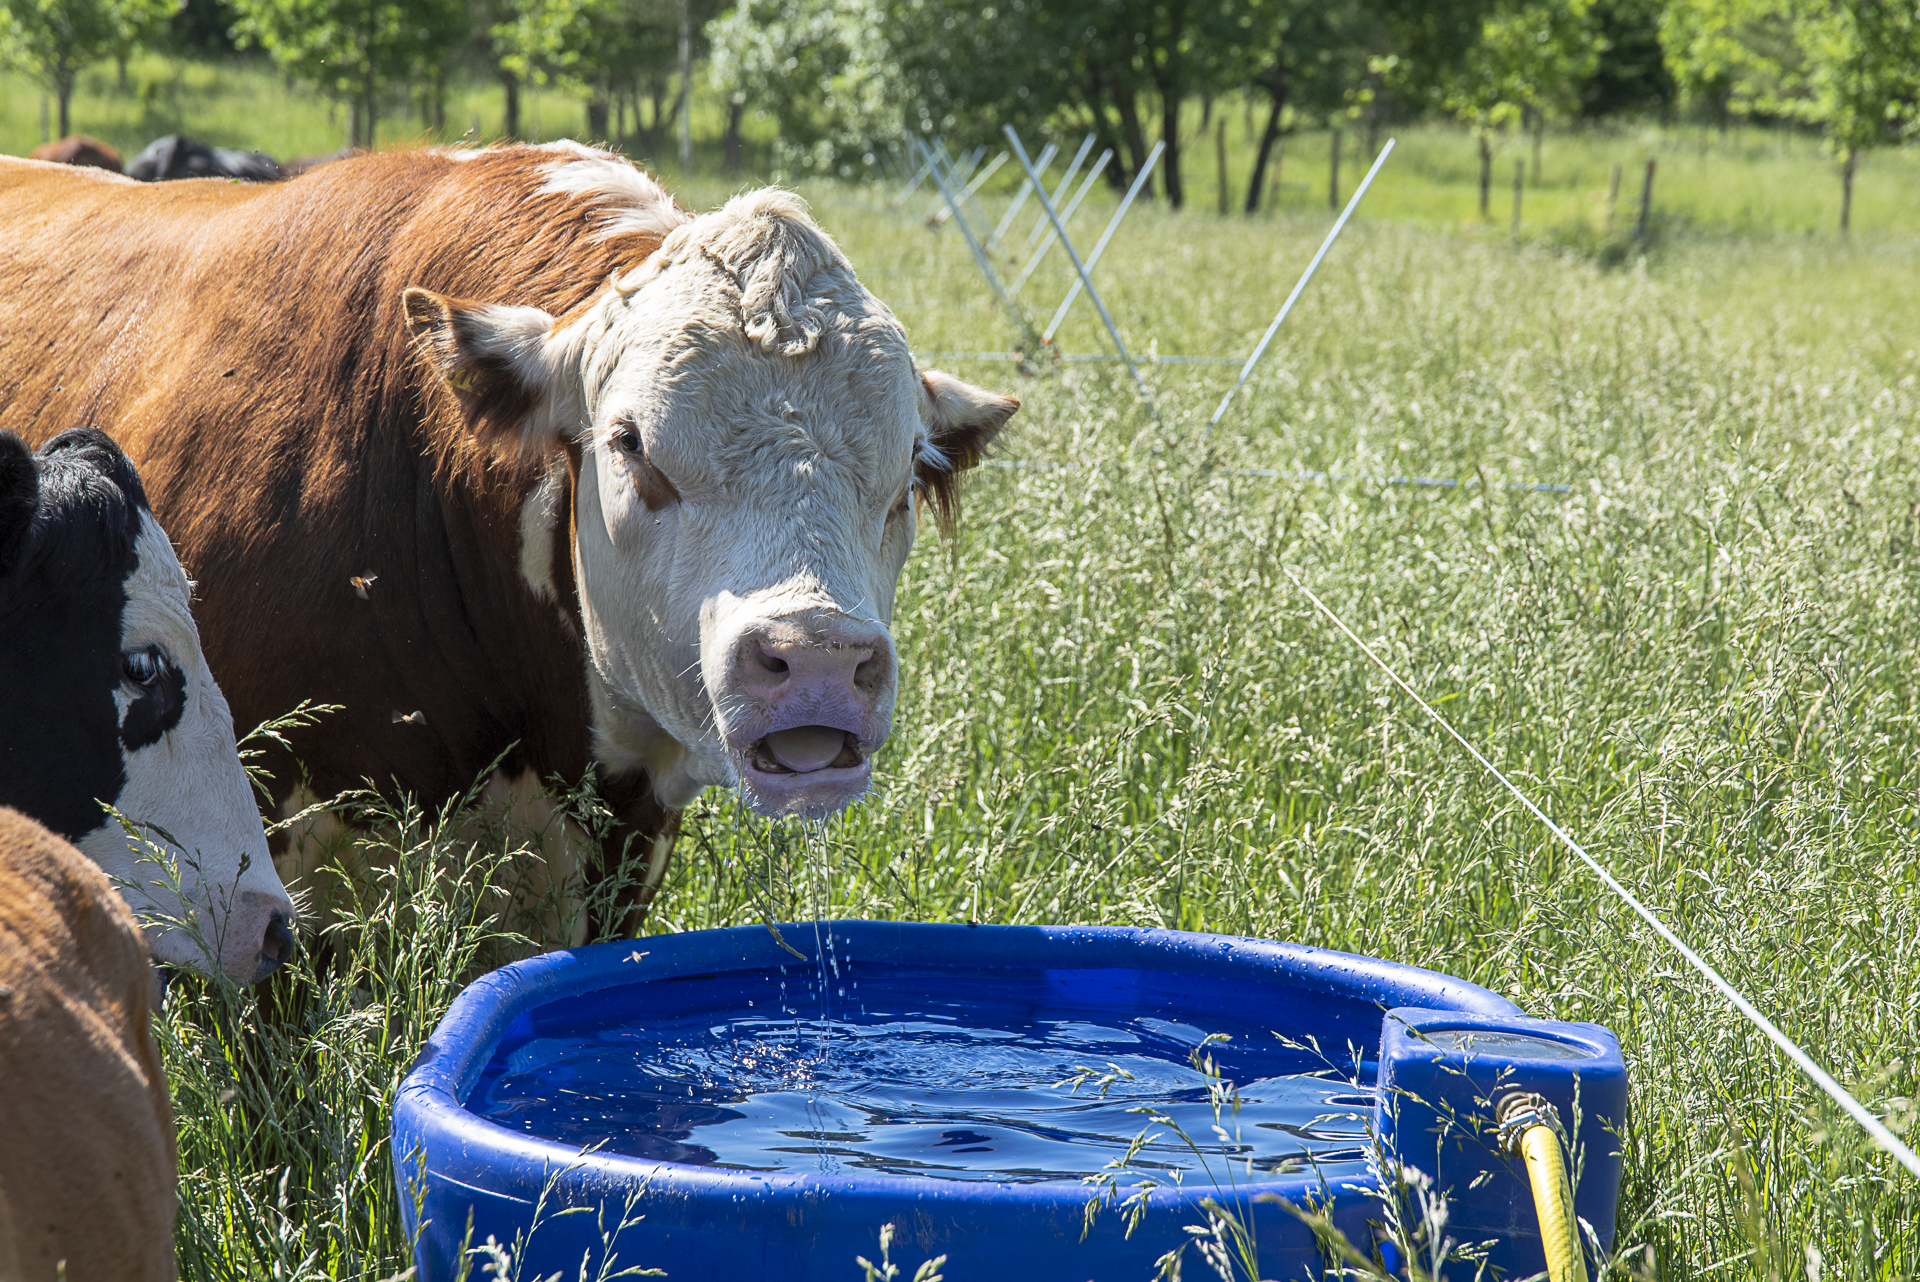 Kuva 29. Tumblewheel-aita mahdollistaa eläinten siirtämisen helposti päivittäin. Juomaveden järjestäminen helposti siirrettäväksi on myös tärkeä huomioida silloin, kun laidunlohkot vaihtuvat usein. Kuva: Marjo Aspegren.